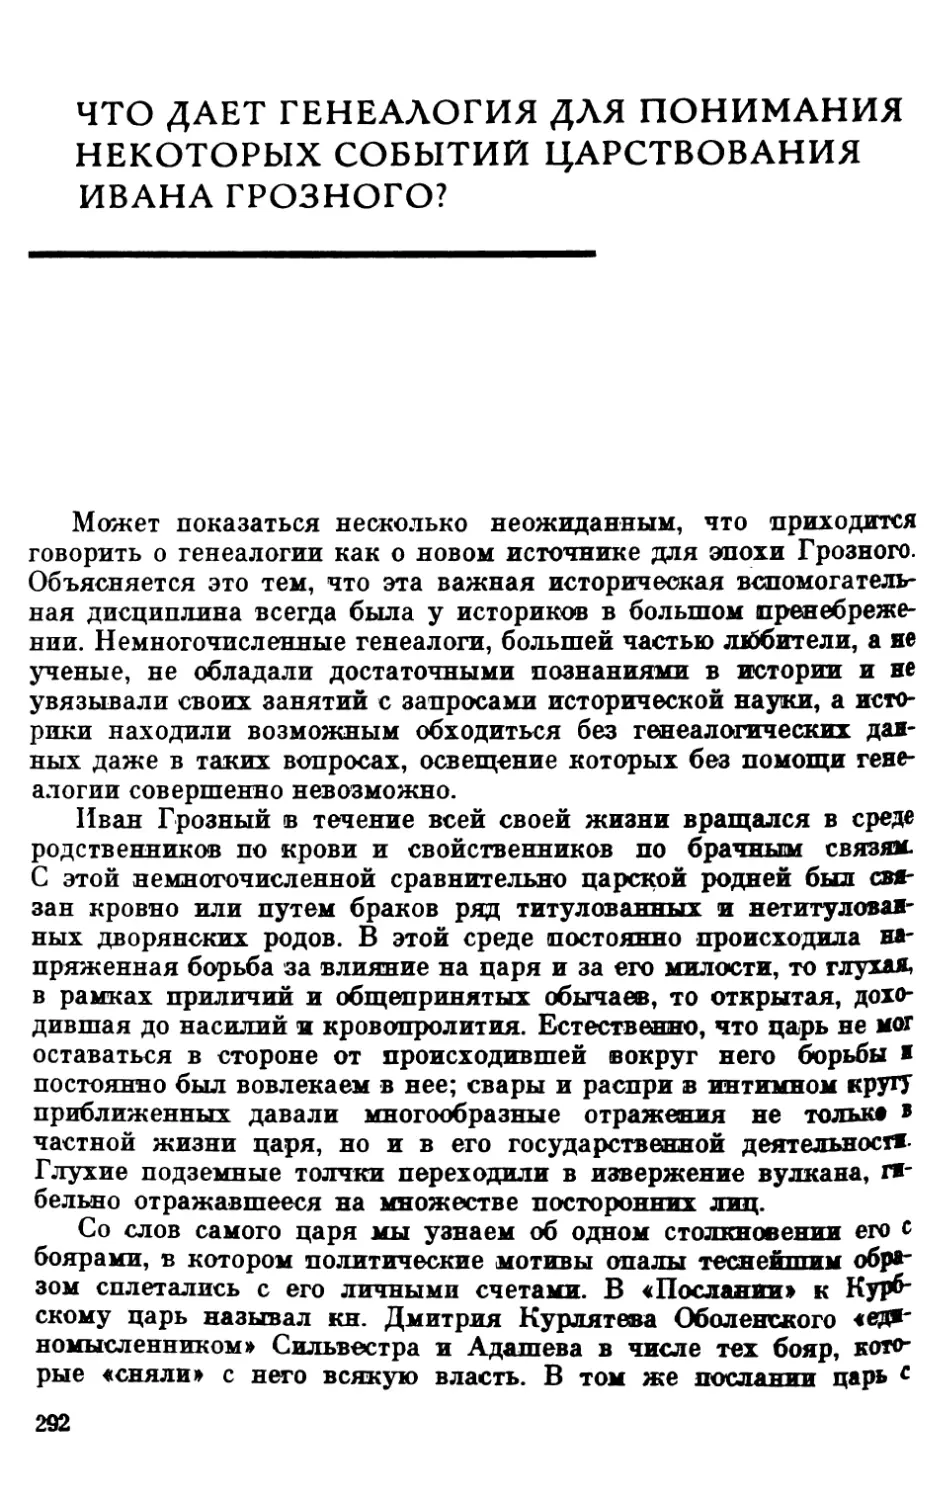 Что дает генеалогия для понимания некоторых событий царствования Ивана Грозного?